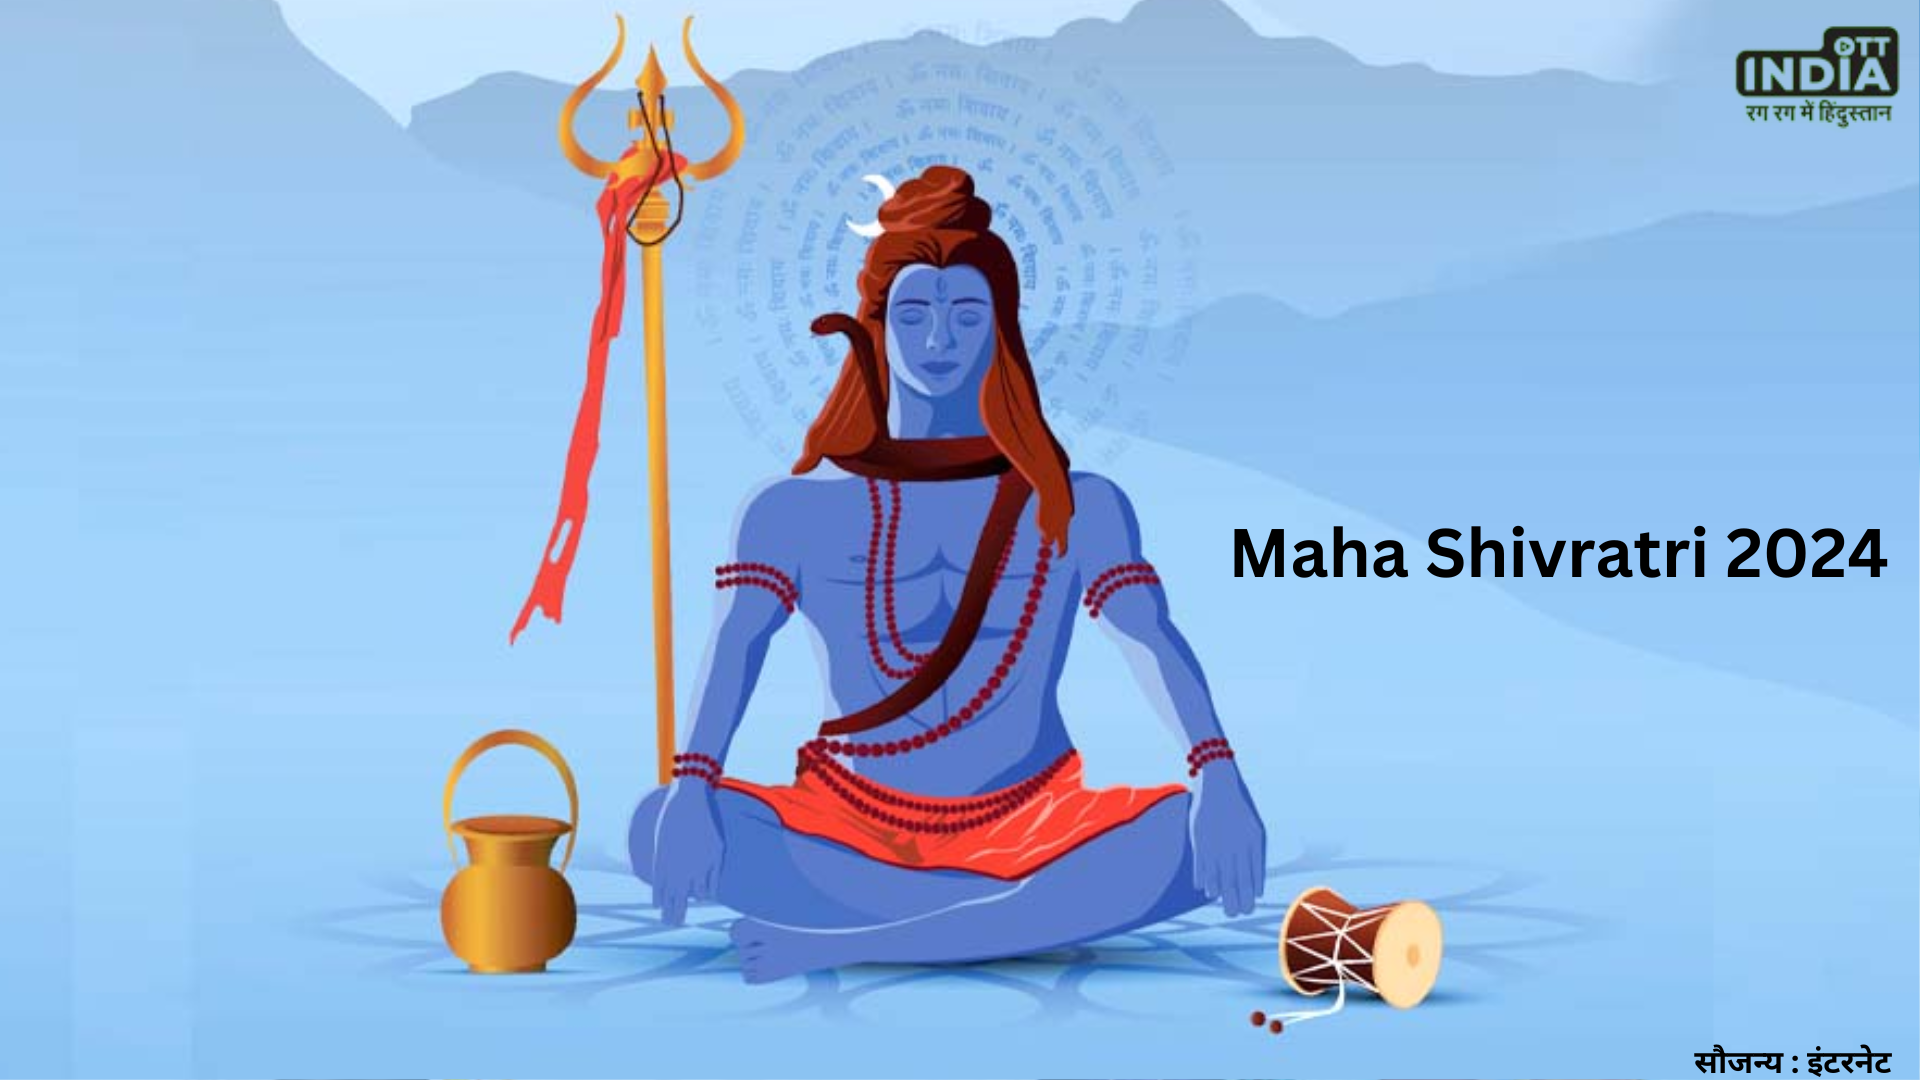 Maha Shivratri 2024  साल 2024 में कब है महाशिवरात्रि, जानें तिथि, शुभ मुहूर्त और पूजा विधि